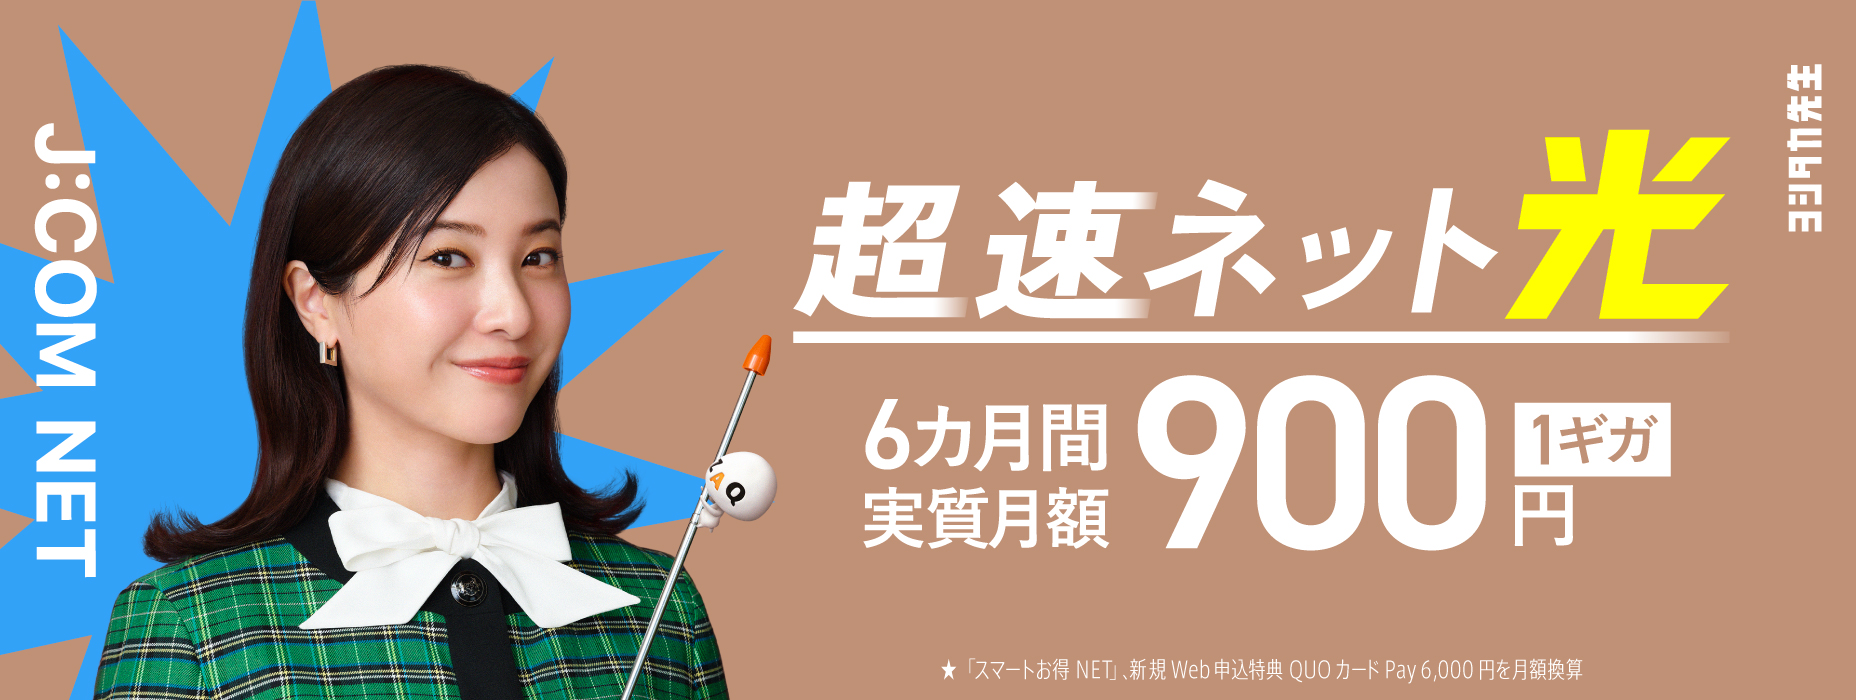 Chosoku Net Próxima Geração AI Wi-Fi Taxa mensal real de 6 meses a partir de 900 ienes (imposto incluído) ★“Smart Okutoku NET”, novo benefício de aplicativo da Web QUO Card Pay 6.000 ienes conversão mensal